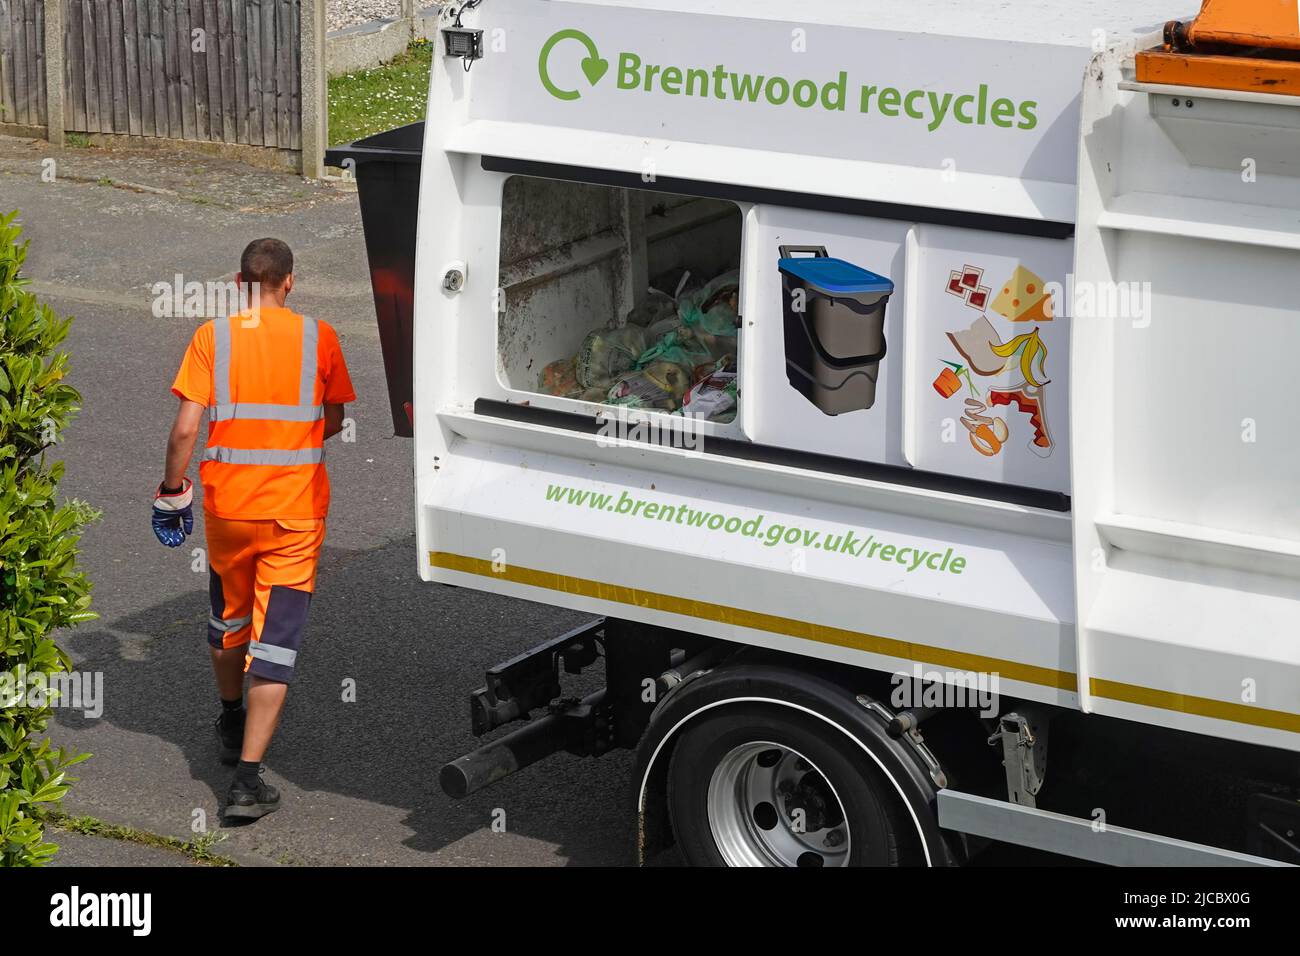 Chauffeur de camion de recyclage alimentaire portant des vêtements de travail haute visibilité et porte coulissante ouverte Brentwood Council camion de collecte des déchets Essex Angleterre Royaume-Uni Banque D'Images